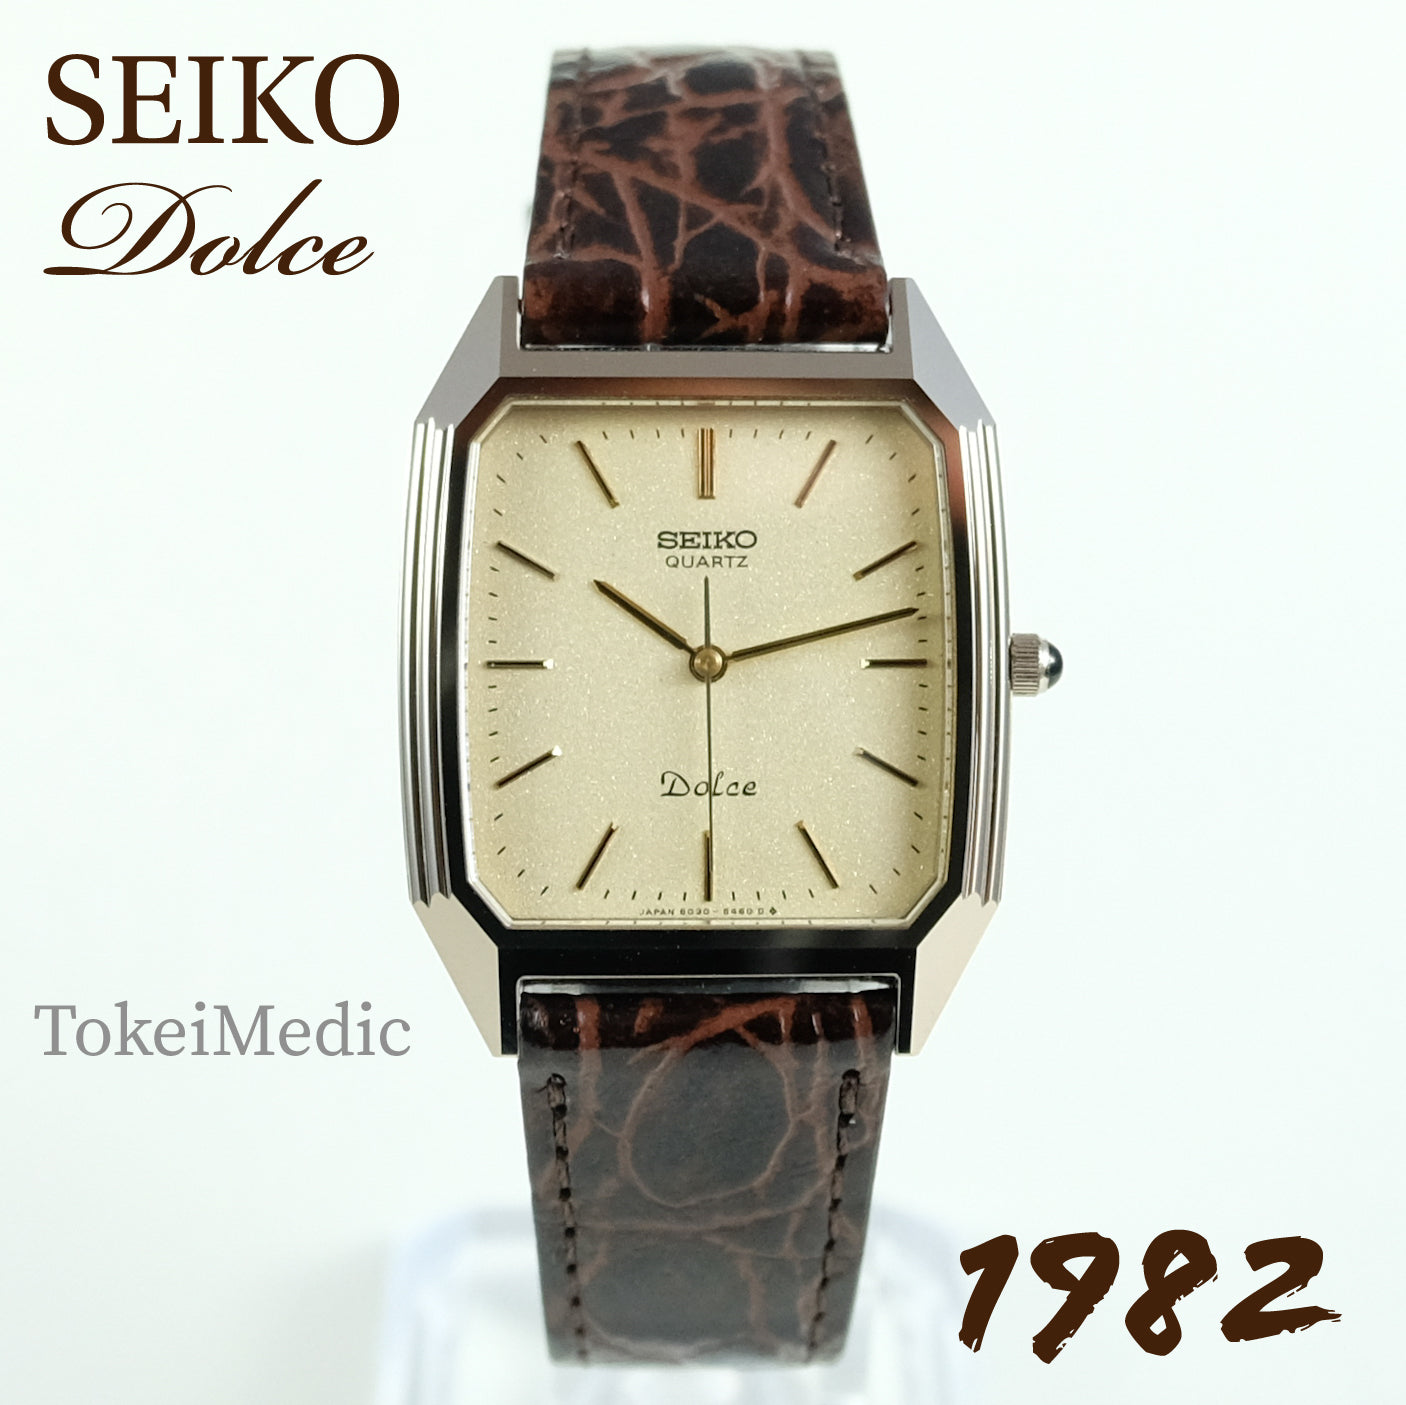 1982 Seiko Dolce 6030-5390